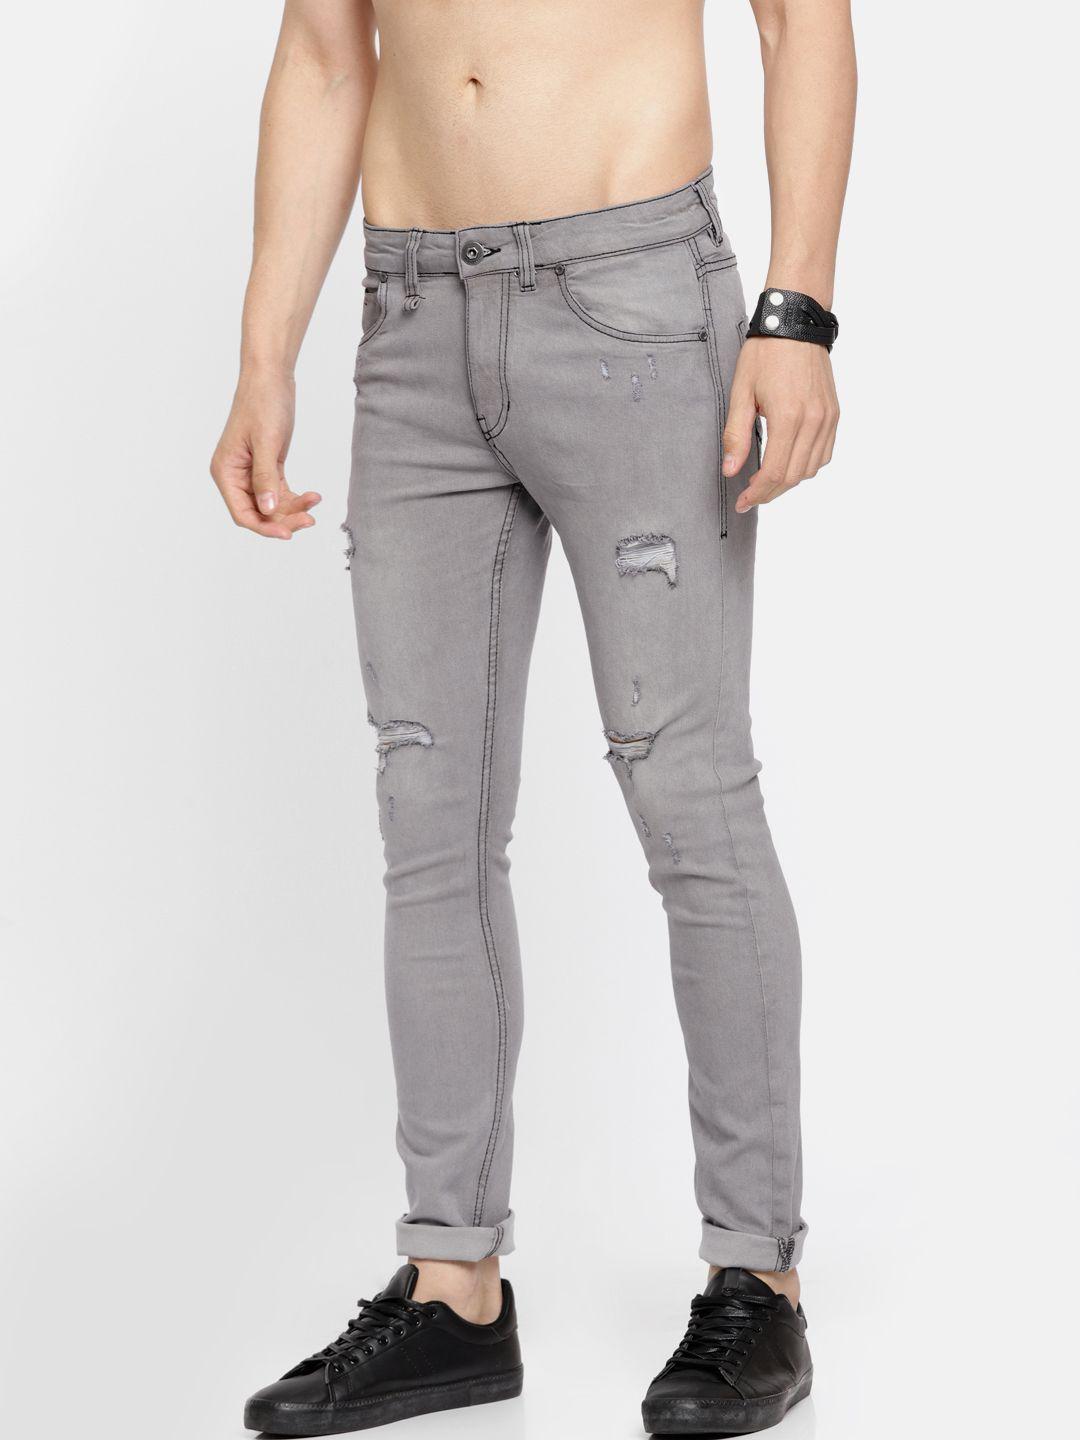 Roadster Men Grey Skinny Fit Mid-Rise Mildly Distressed Stretchable LYCRA Fiber Jeans